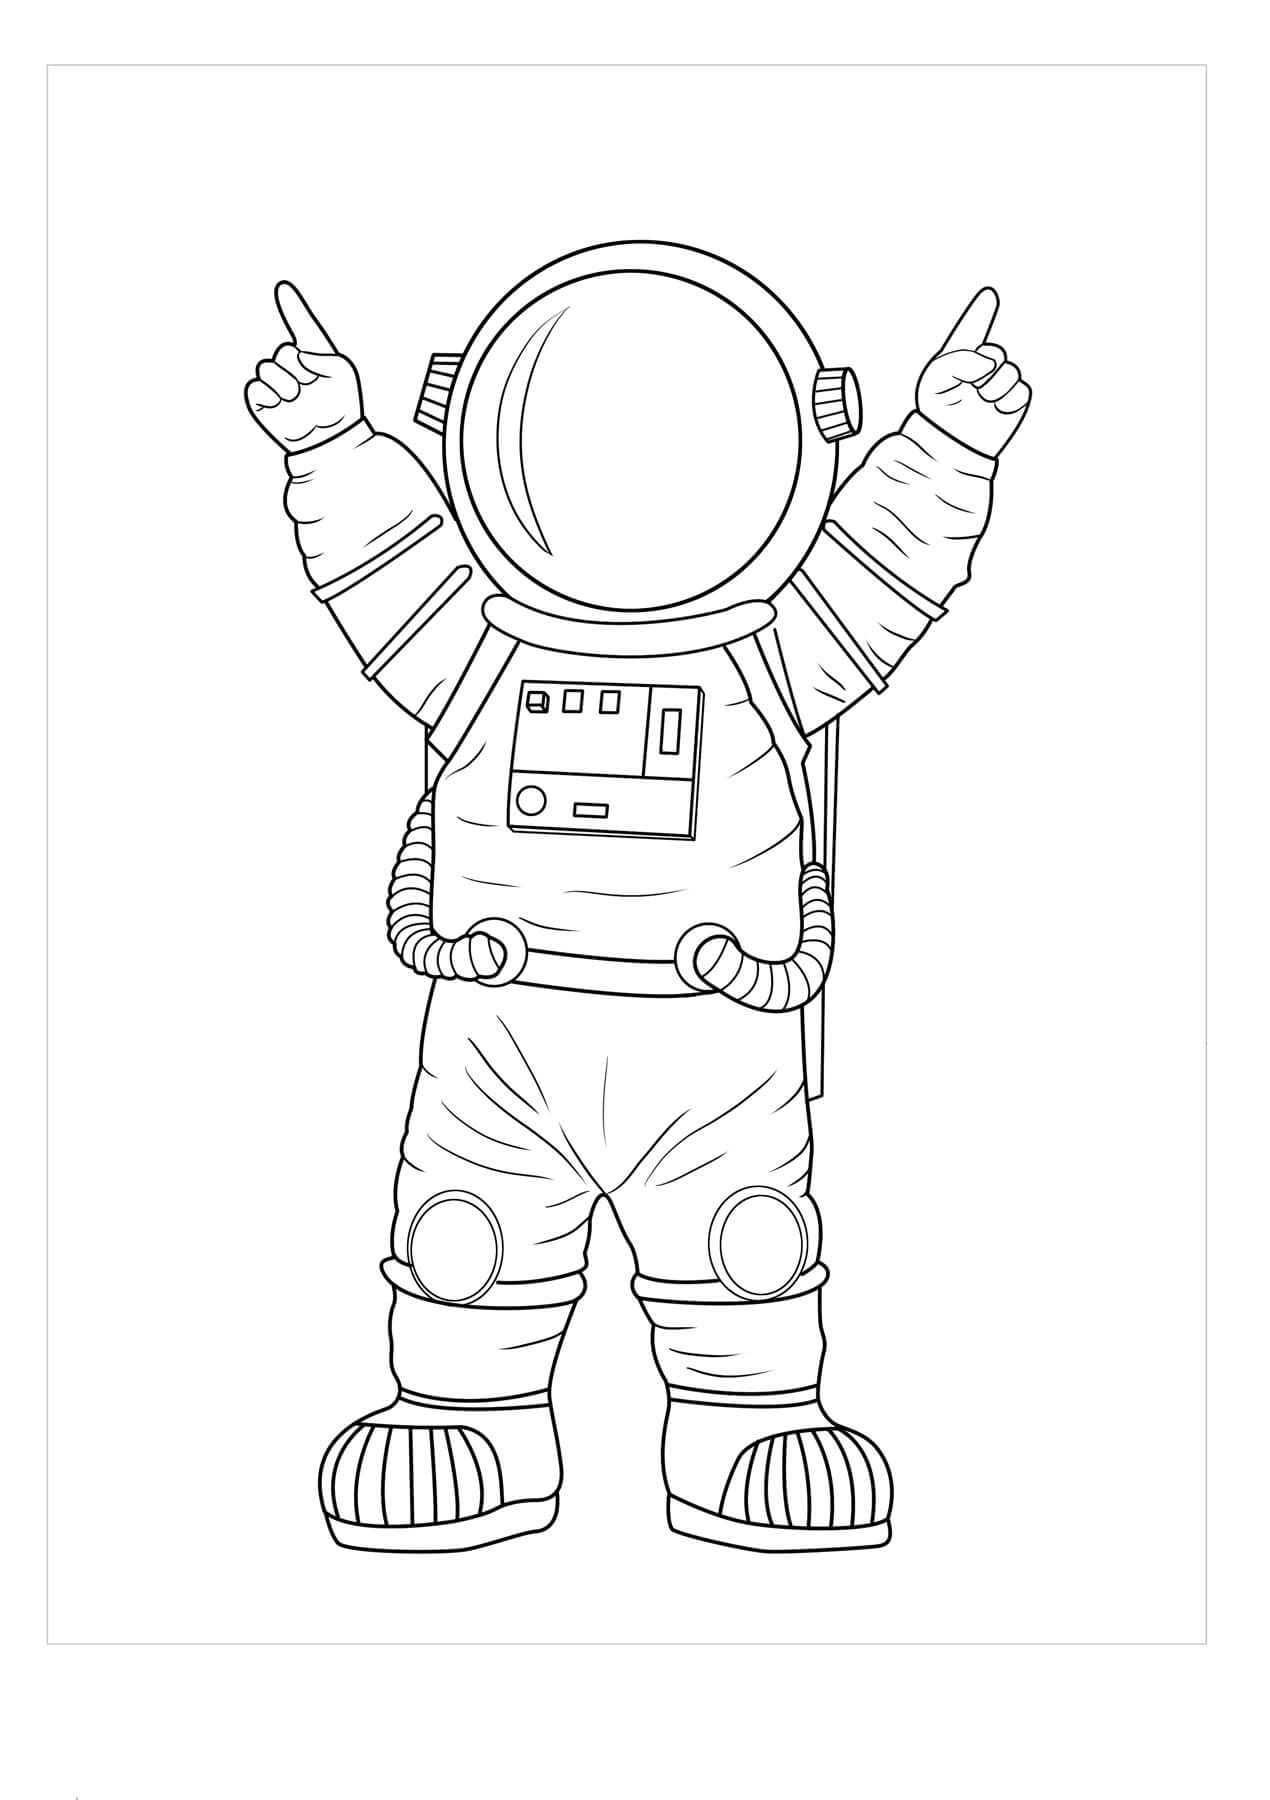 Оформление ко дню космонавтики шаблоны. Космонавт раскраска. Космонавт раскраска для детей. Раскраска космонавт в космосе. Космонавт трафарет для детей.